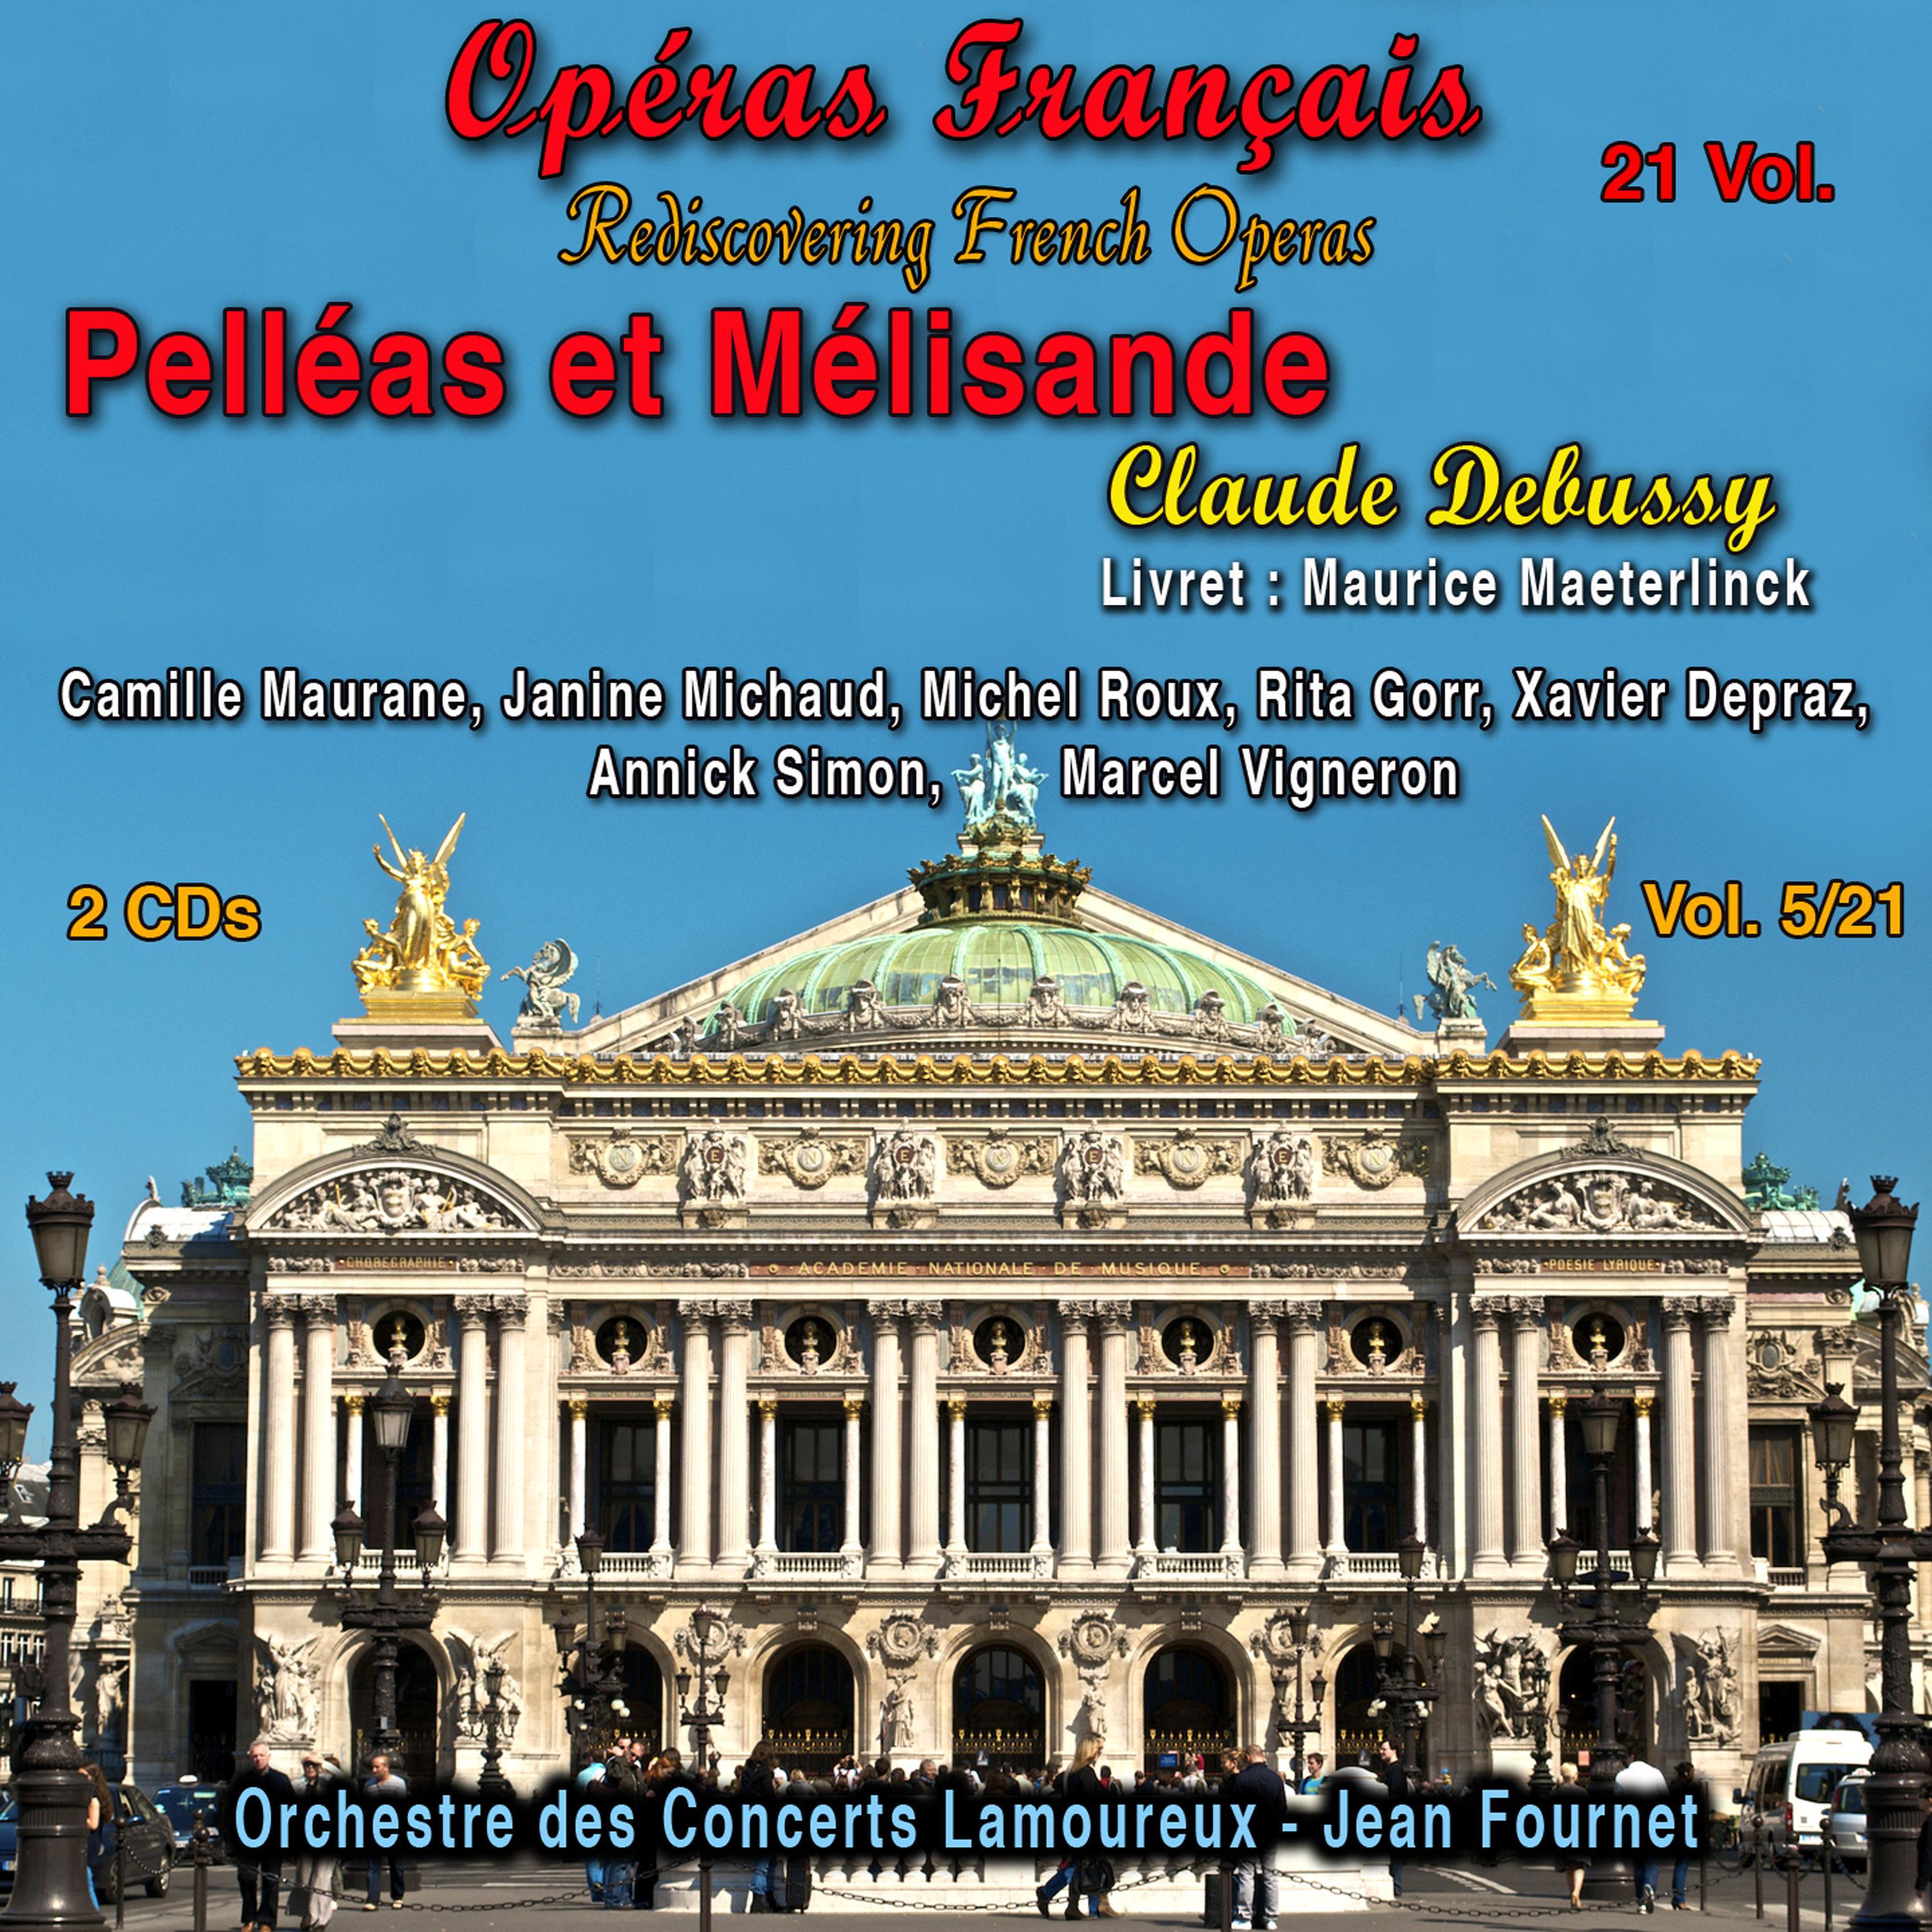 Claude Debussy - Pelléas et Mélisande, Acte IV, Scène 4: C'est le dernier soir